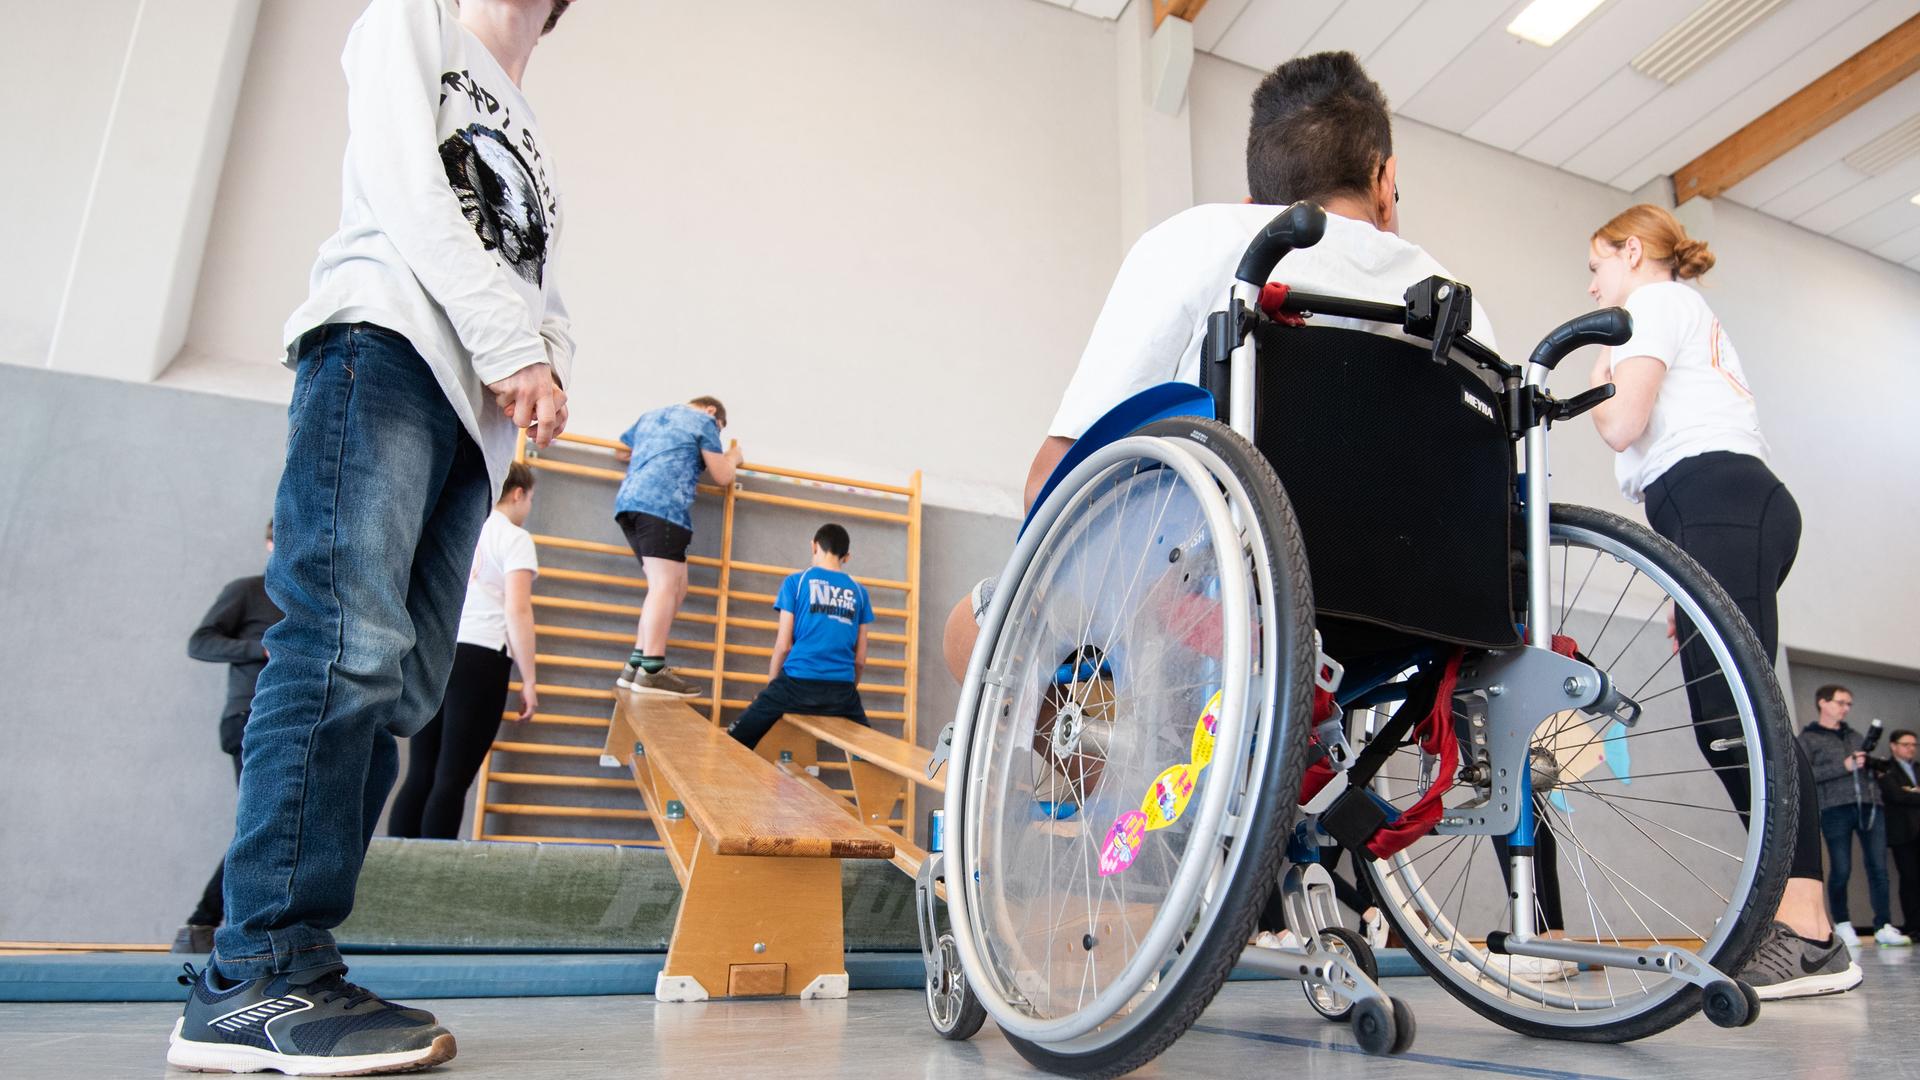 Ein Junge im Rollstuhl und Kinder ohne Behinderung beim Sportunterricht in einer Turnhalle.
